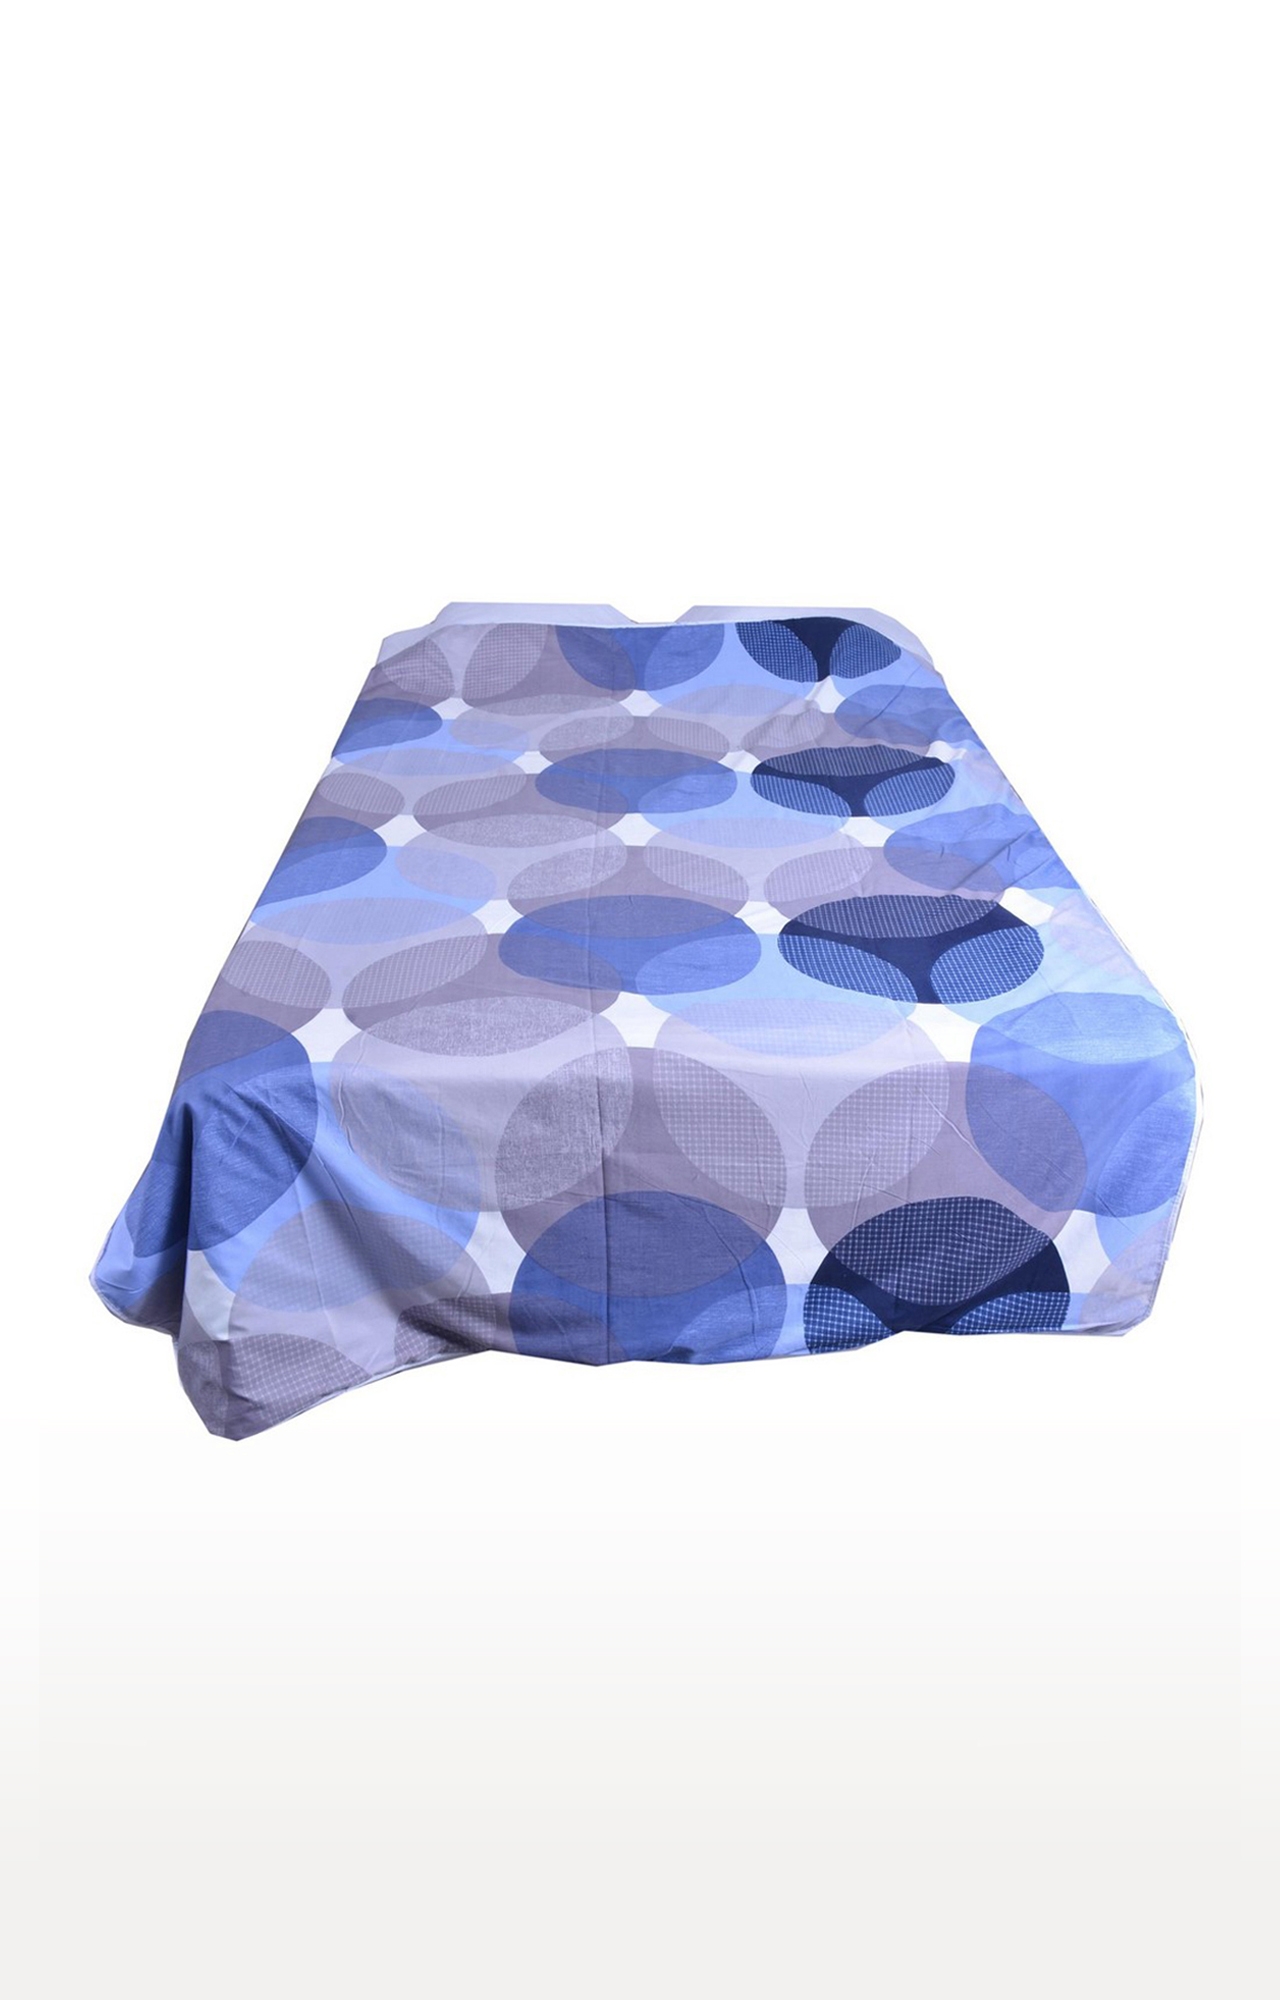 V Brown | Polka Blue Printed Cotton 3 Layer Single Bed Quilt Dohar 0